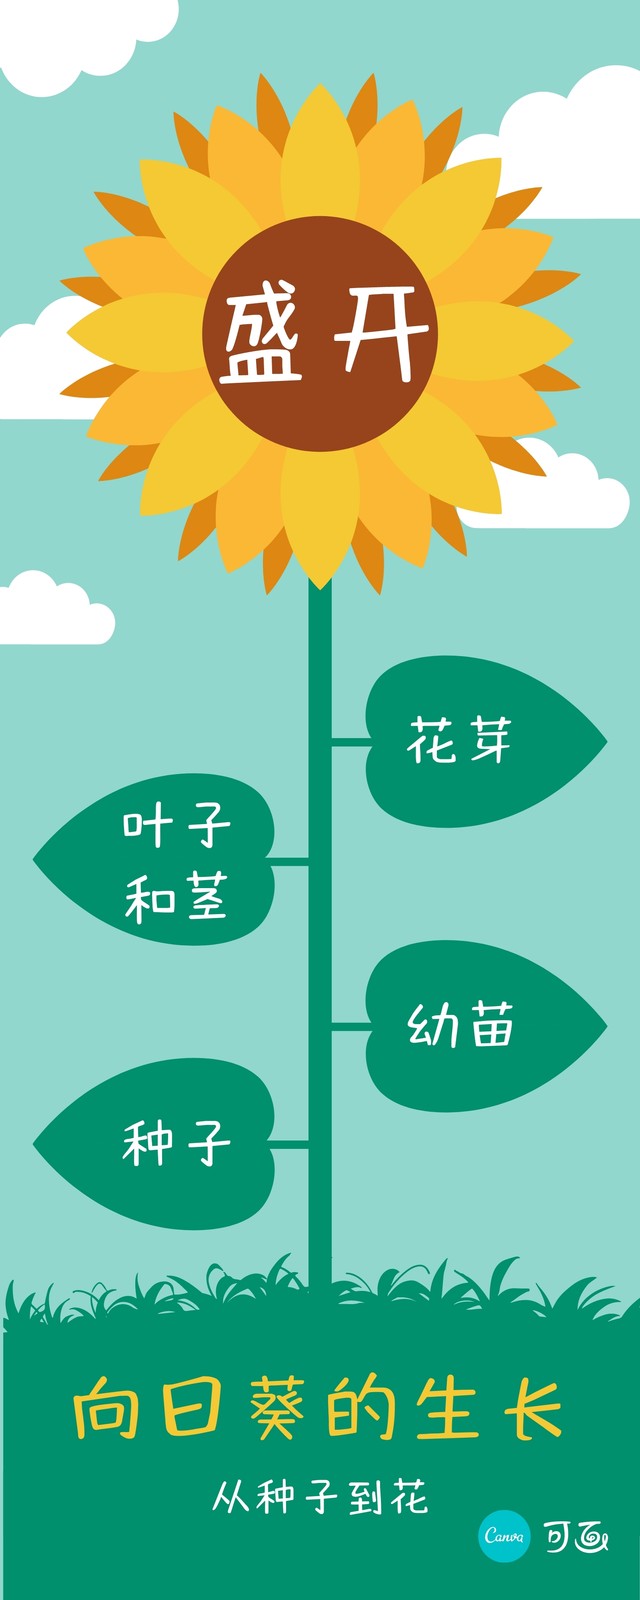 绿黄色向日葵的生长卡通介绍中文信息图表